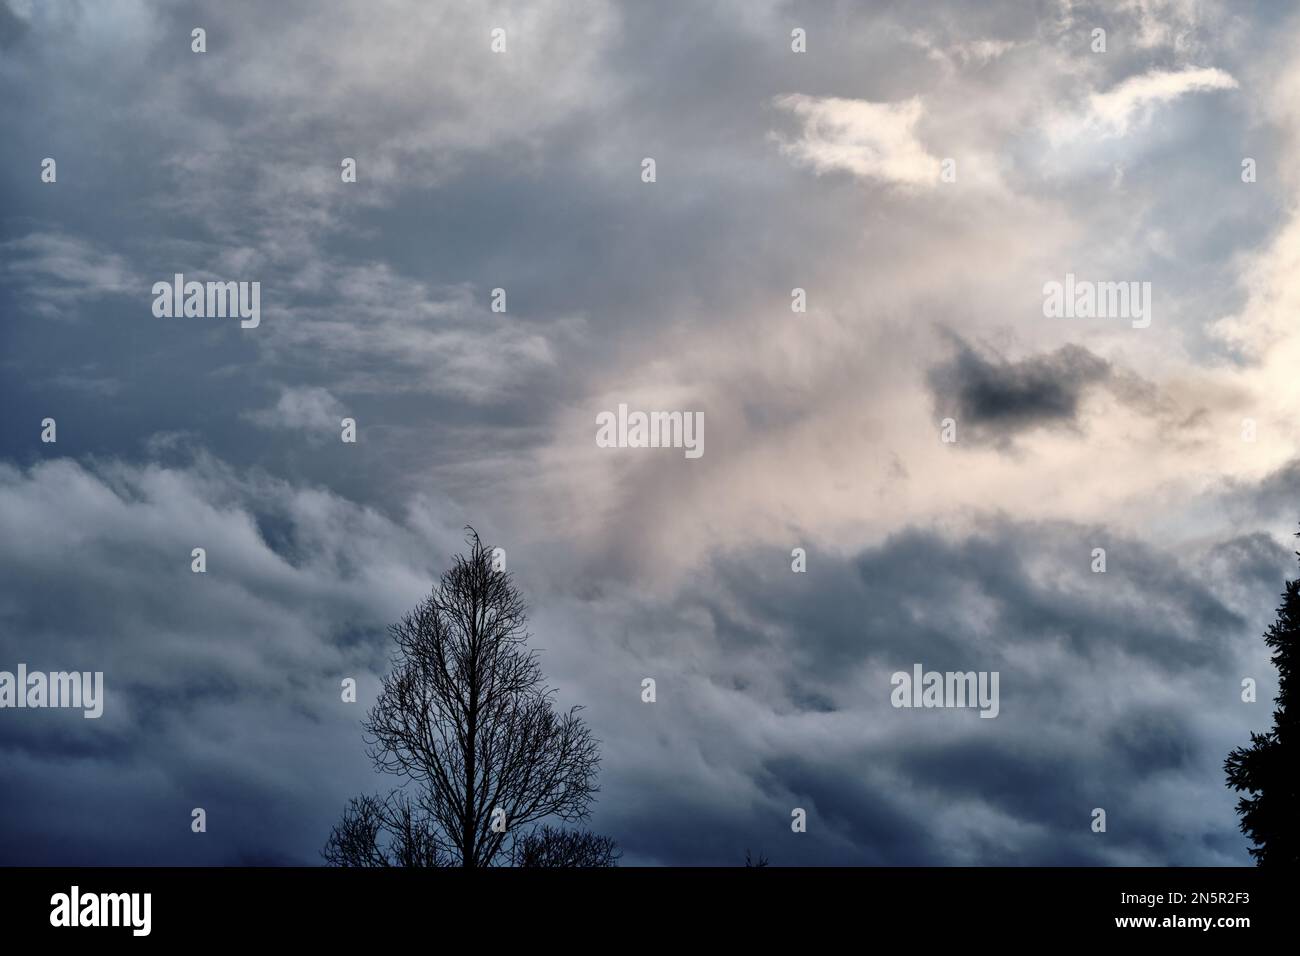 Sommet de l'arbre nu avec fond de nuages de tempête. La lumière traverse un nuage qui ressemble à un visage. Banque D'Images